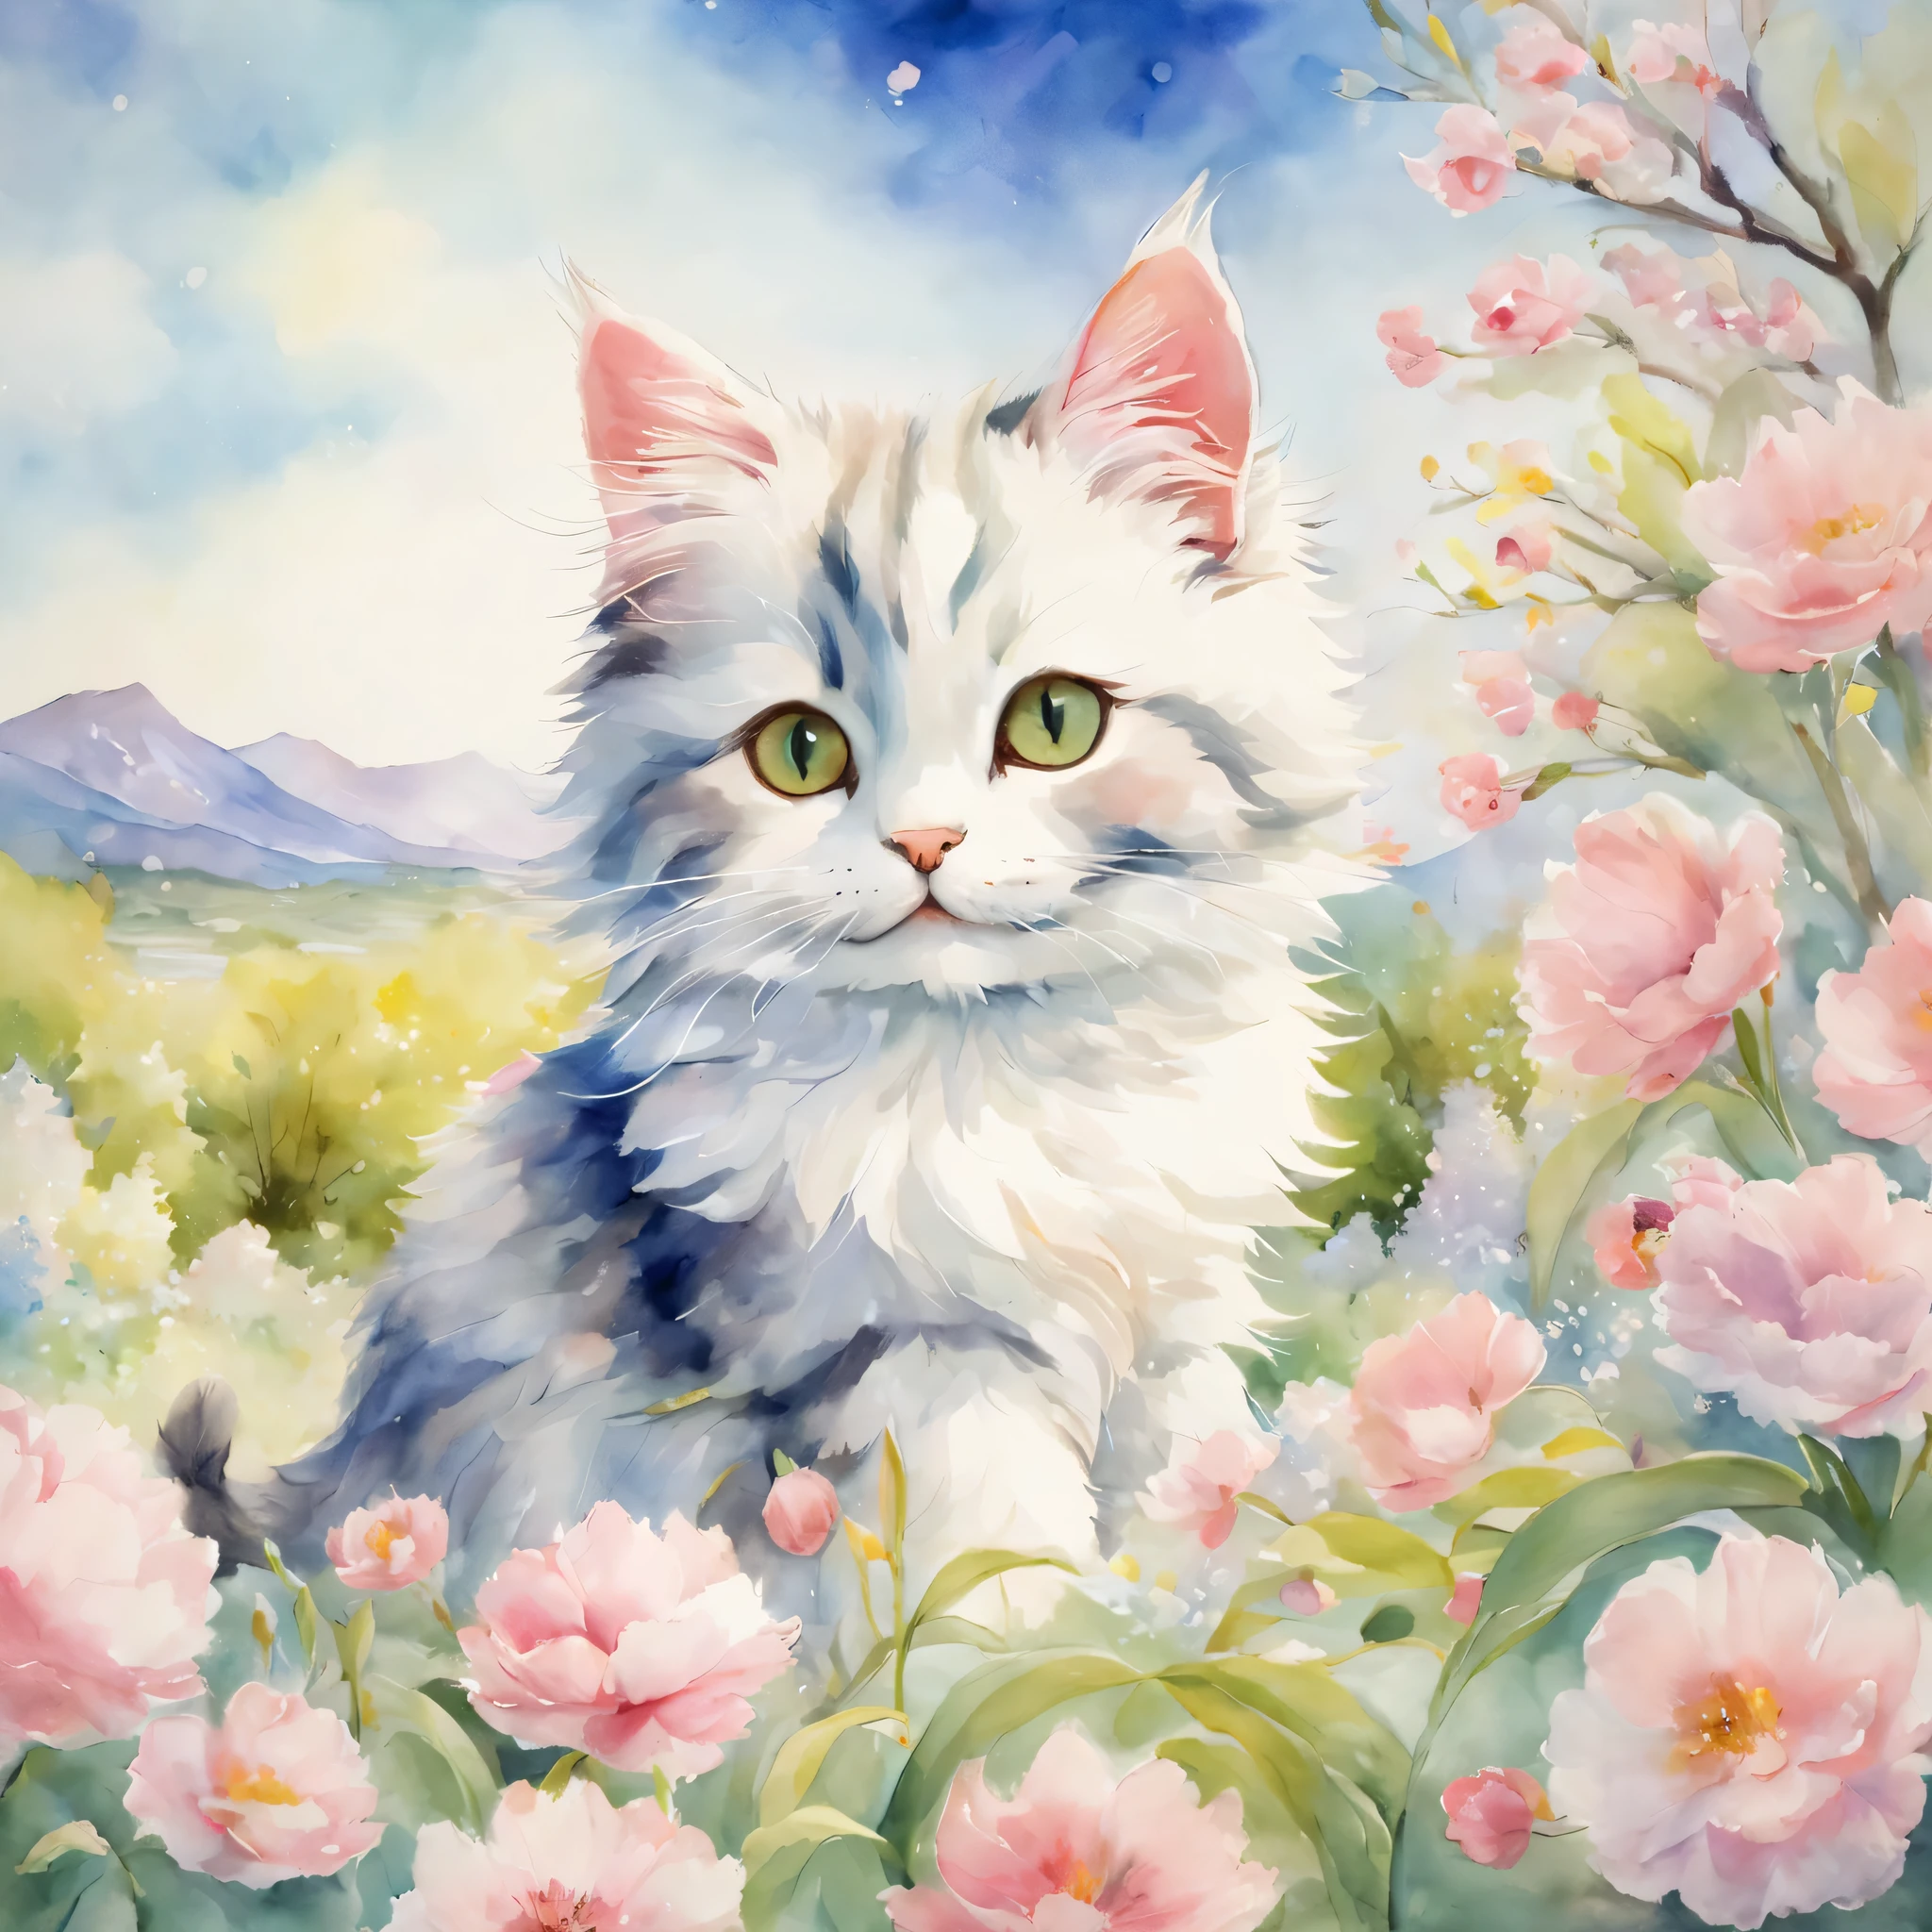 ((Кот радуется весне)),весенние цветы,шедевр,высшее качество,пушистый кот,маленький,милый,Футебутеси,веселье,счастье,,Модные декорации,Анатомически правильный,Всего наилучшего,最高にмилый猫,милый猫，,фантазия,стиль Рэндольфа Калдекотта,Просвещение,акварельная живопись,нежные оттенки